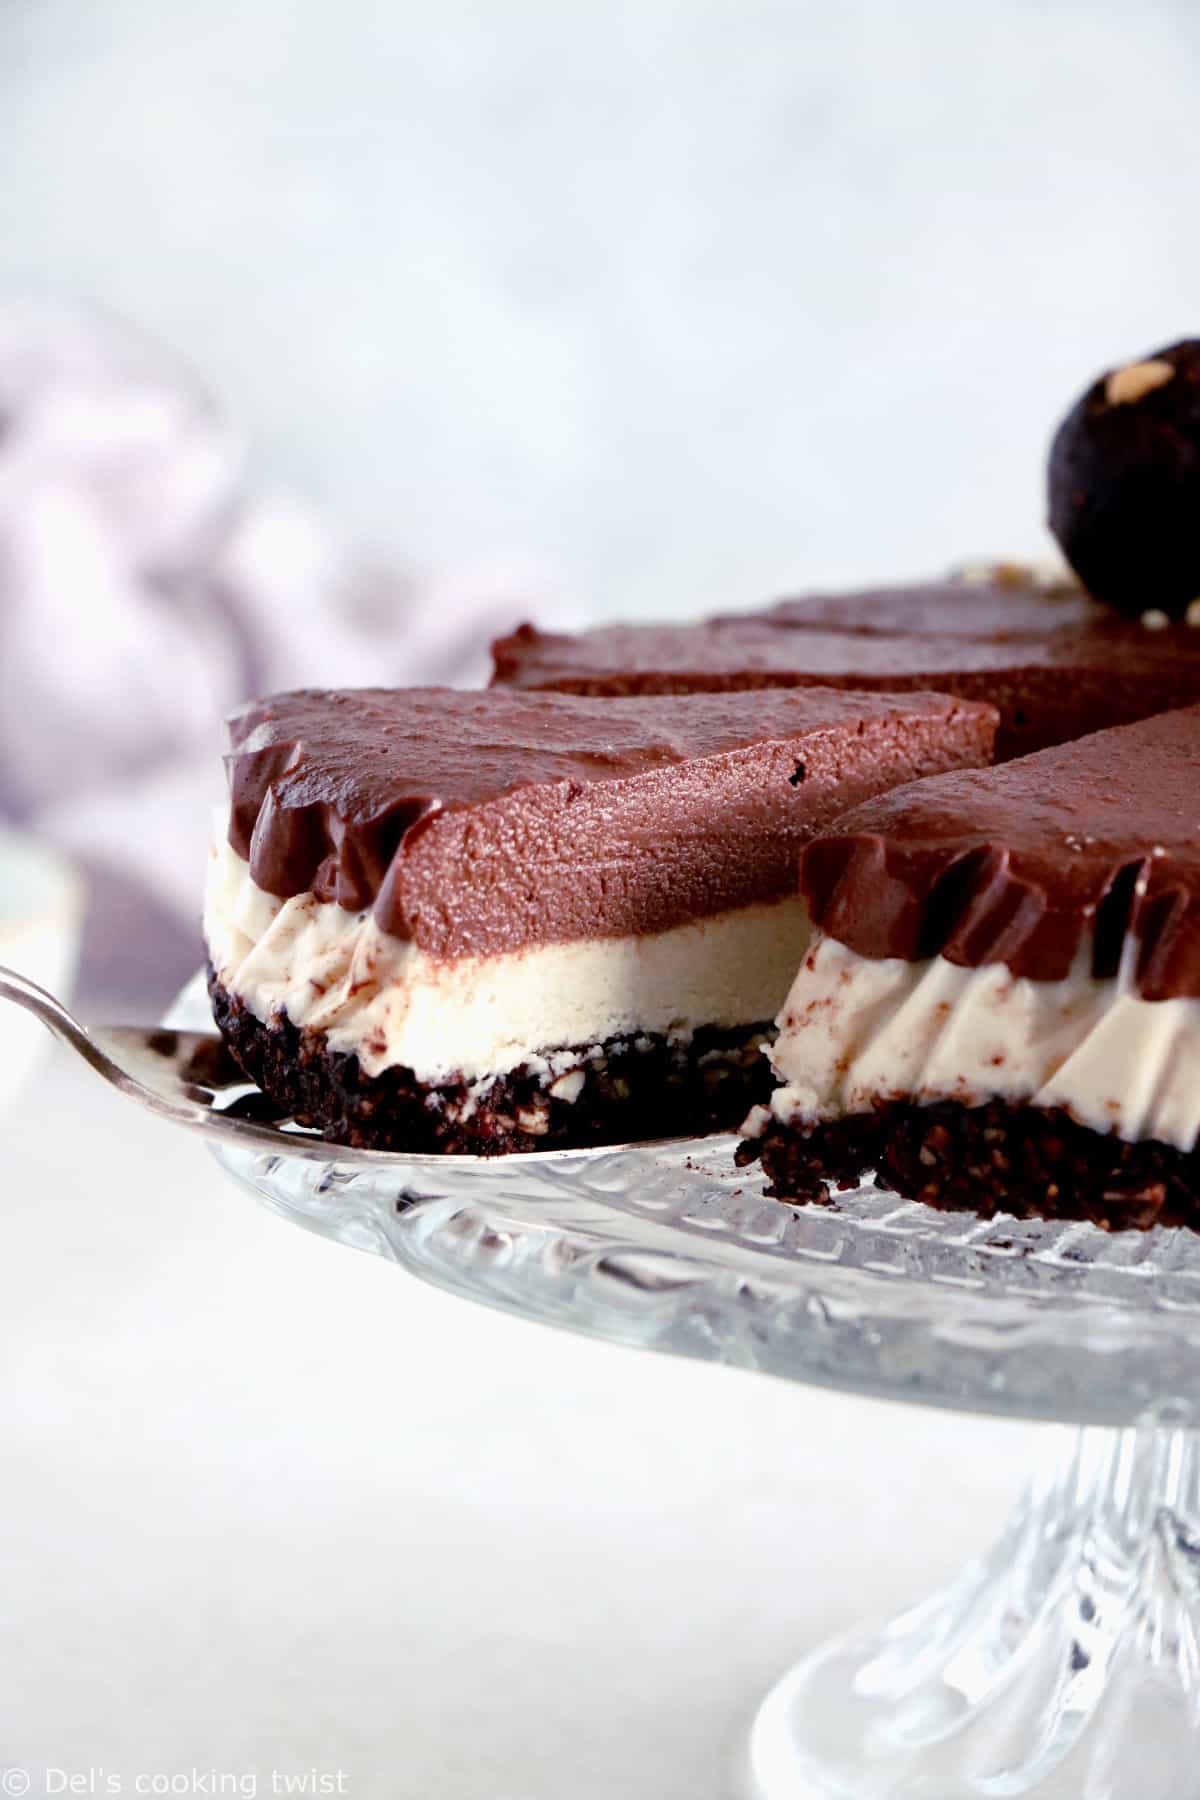 Ce cheesecake vegan au chocolat et noix de cajou vous fera fondre de plaisir. C'est un dessert vegan sain réalisé avec une base croustillante chocolatée réhaussée de deux couches crémeuses aux noix de cajou.